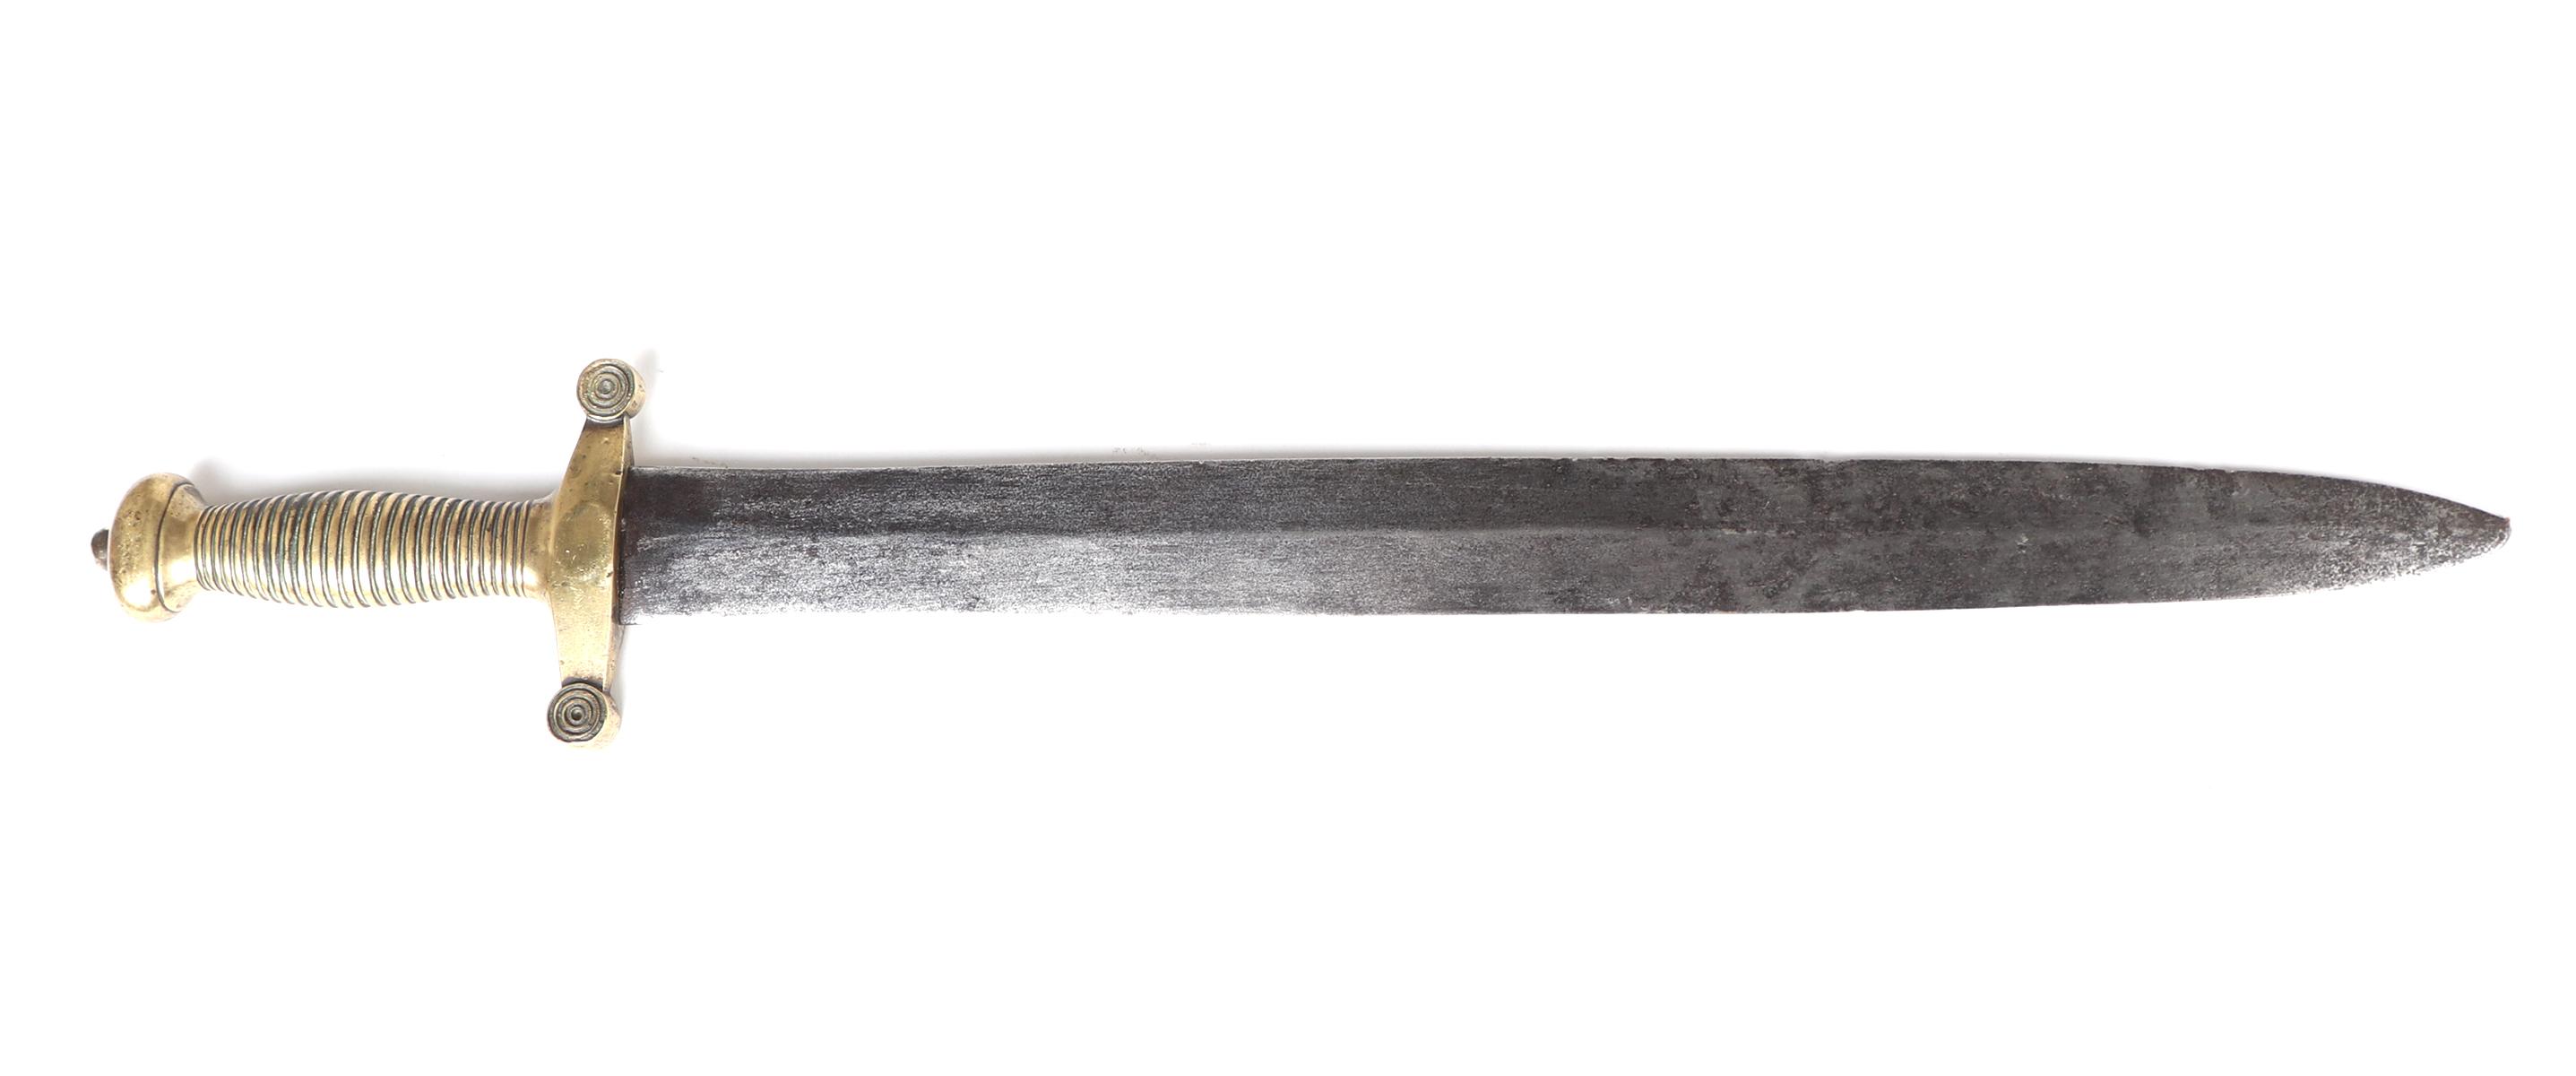 European Gladiator Sword, 19th century